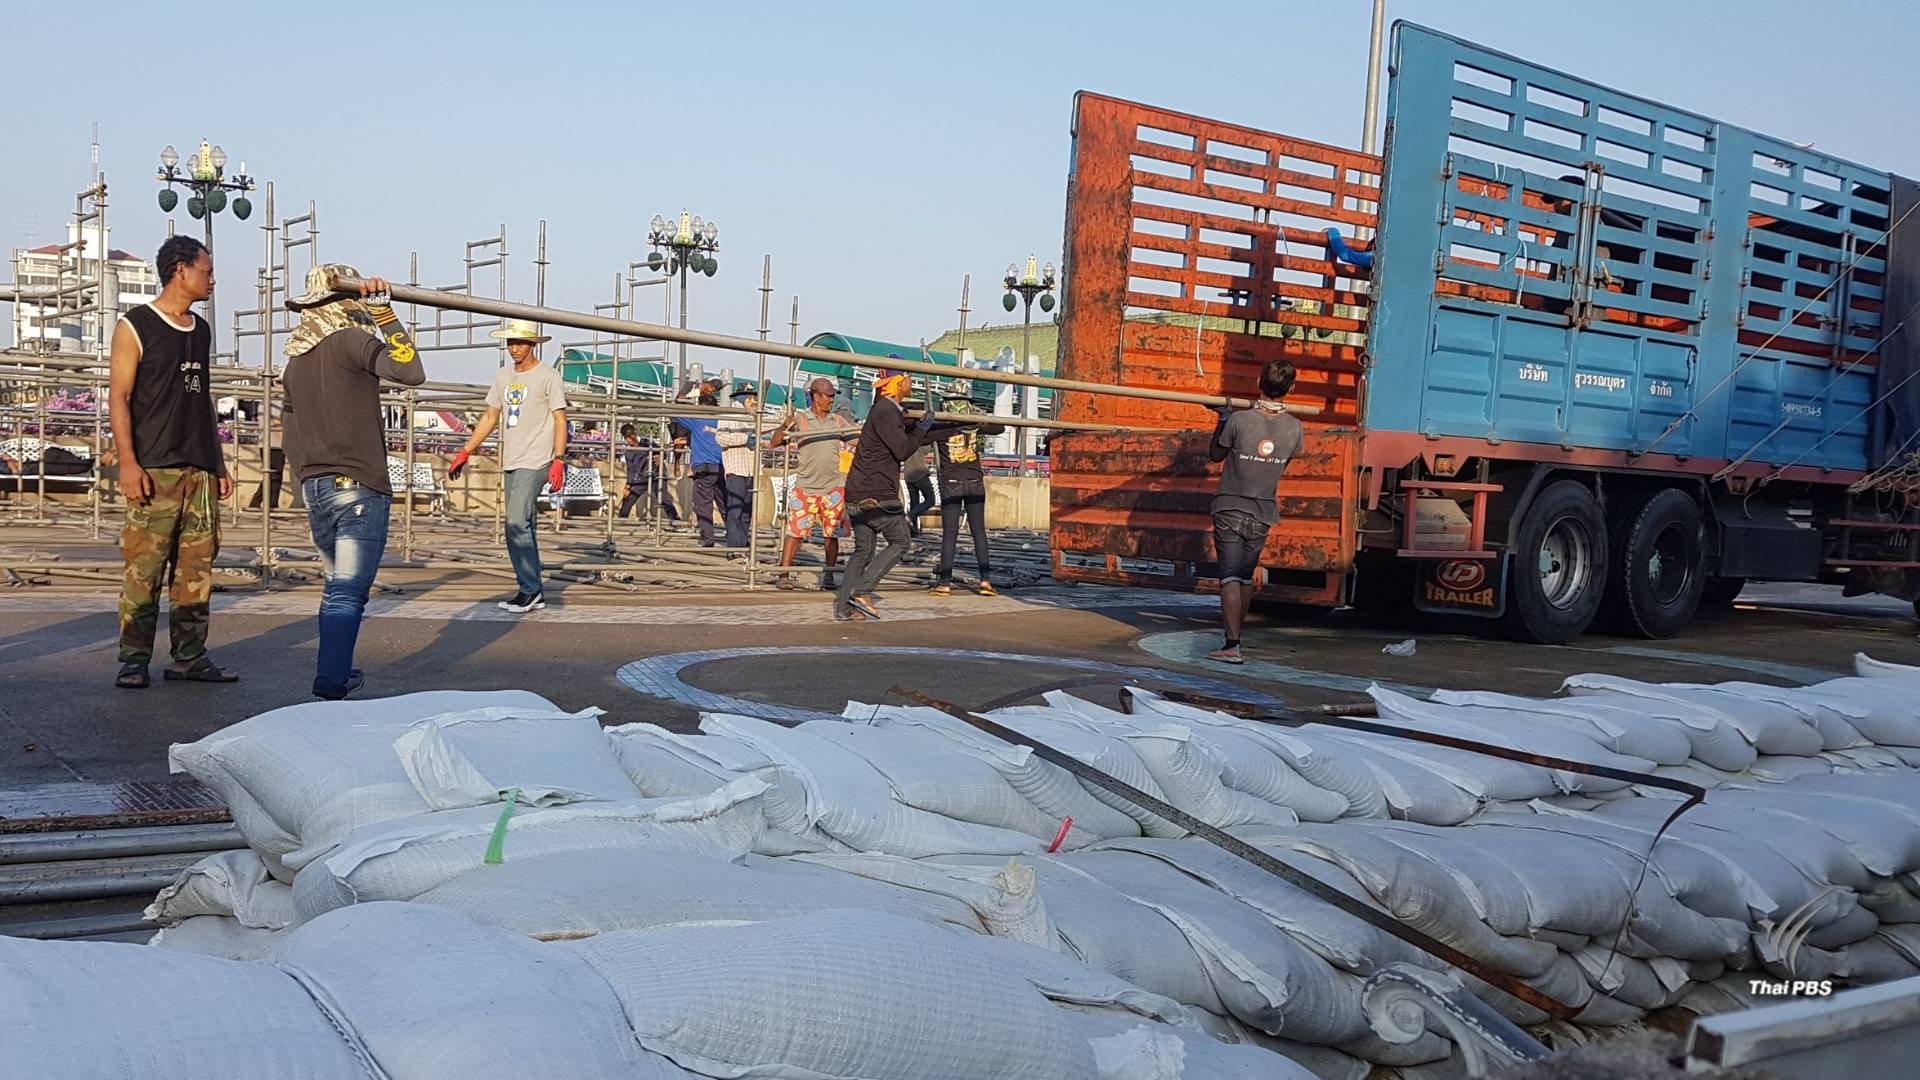 เทศบาลนครนนทบุรี ยกเลิกจัดงาน "ลอยกระทง" เฝ้าระวังน้ำท่วม